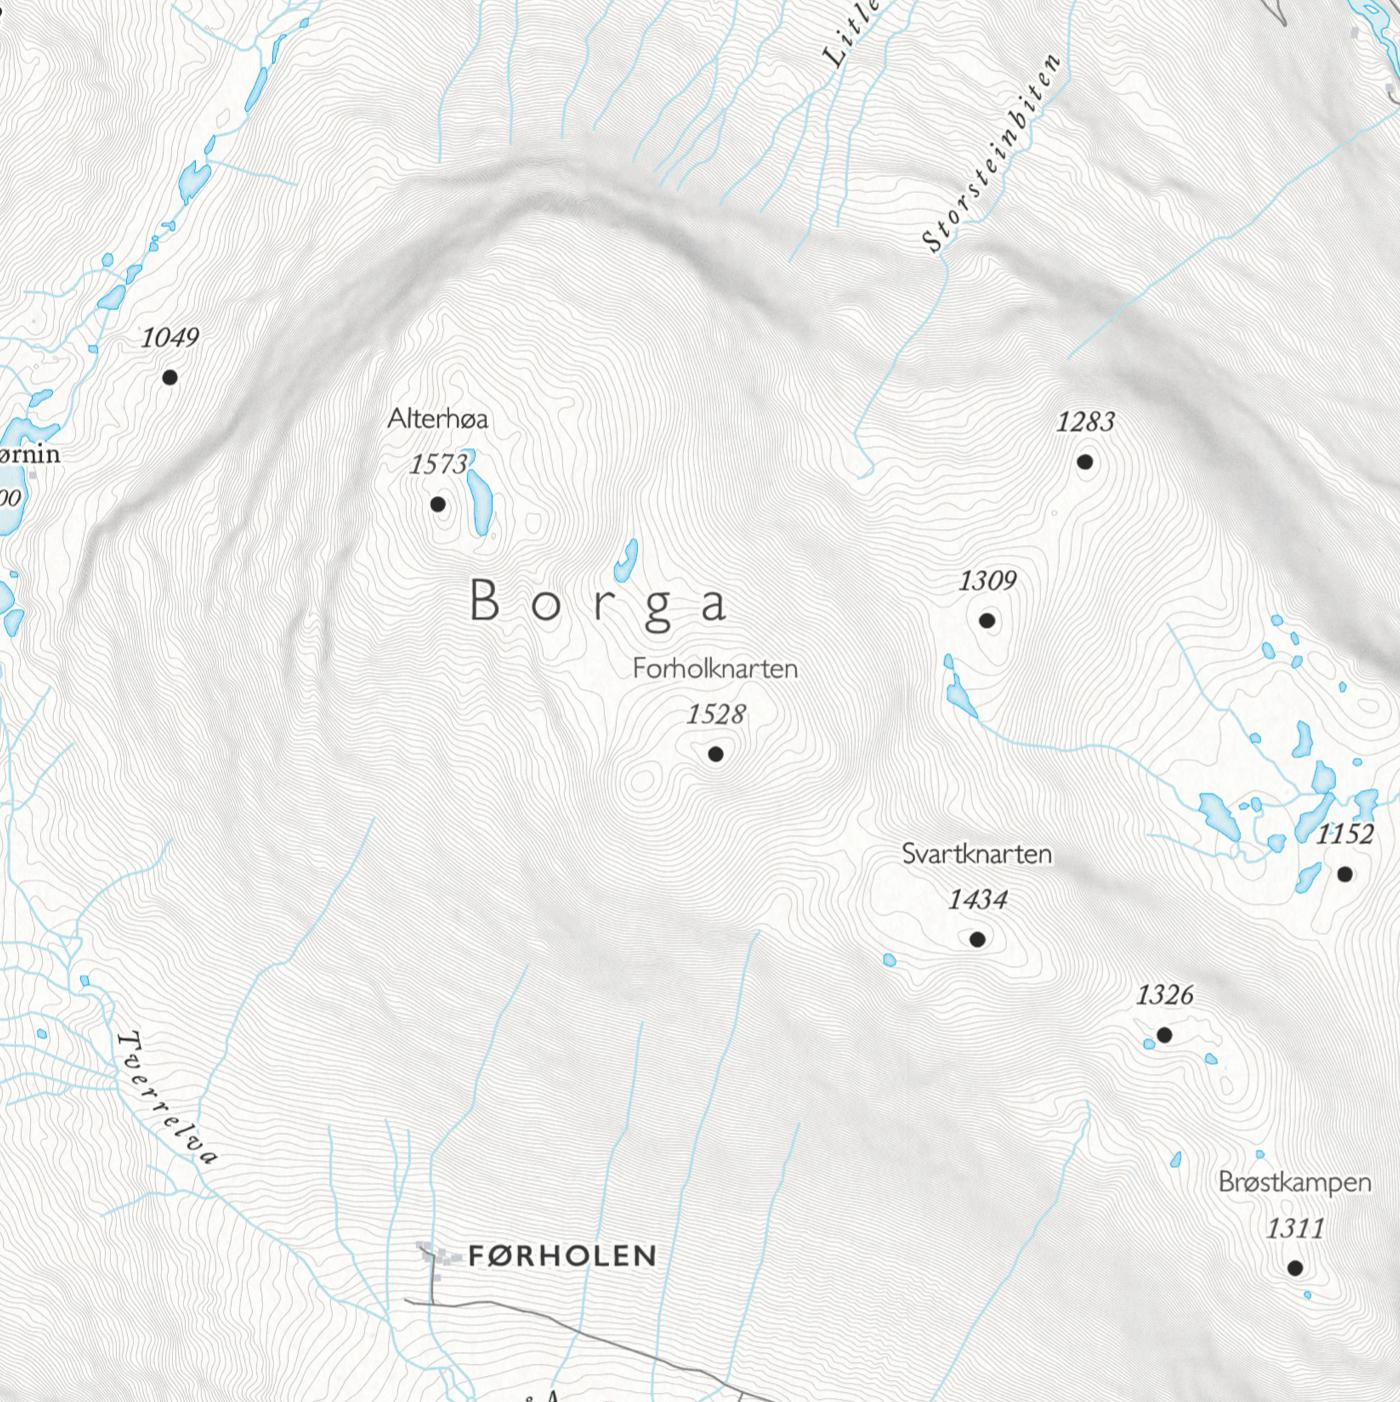 Skikart for Bjorli (50x70cm)-Maps-Dapamaps-Hyttefeber